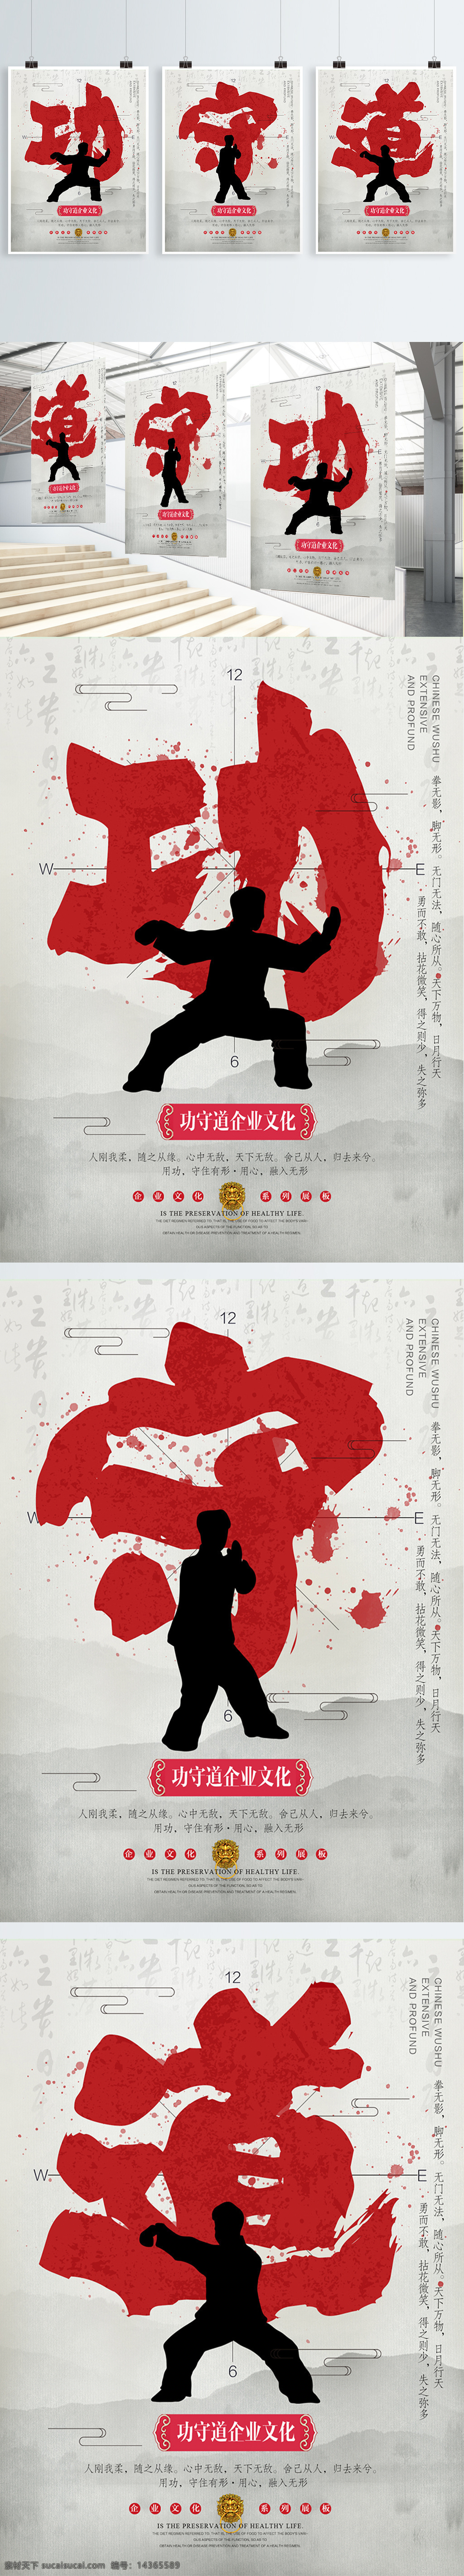 功 守道 中国 风 水墨 简约 企业 文化 系列 展板 功守道 中国风 简洁 公司 海报